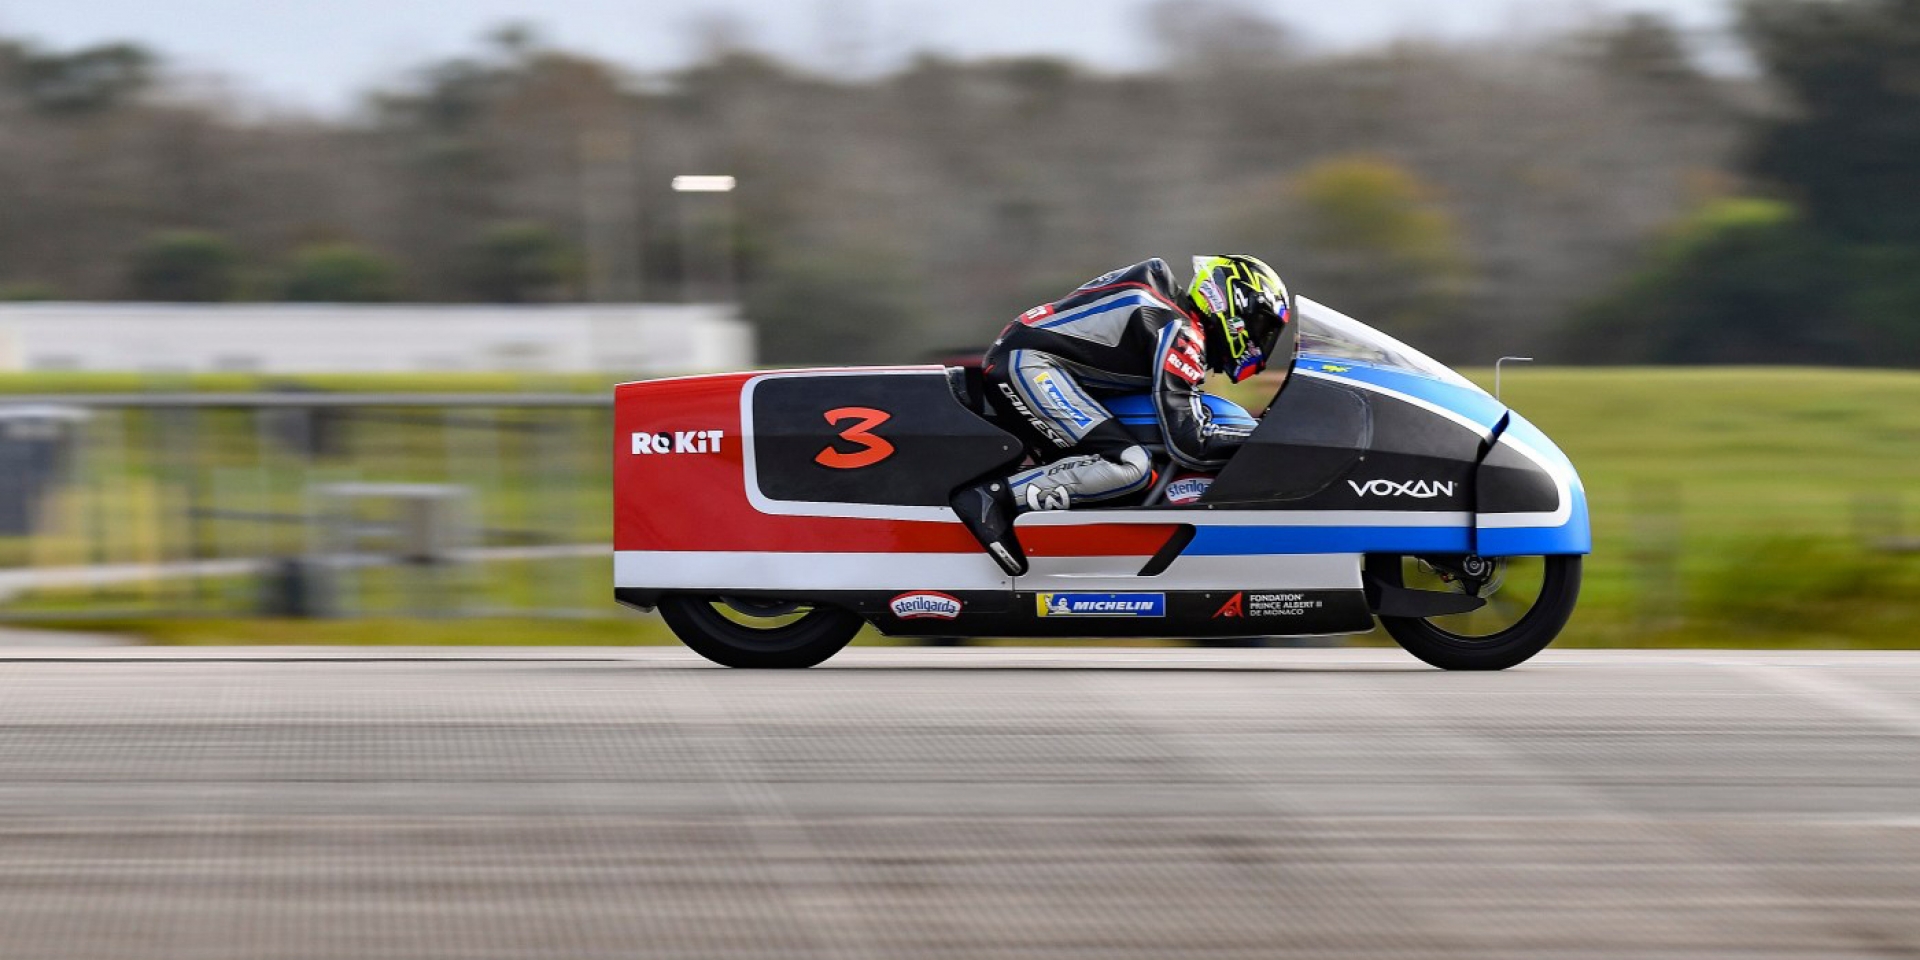 羅馬皇帝Max Biaggi的最速「電」堂 !  456km/hr刷新電動機車最速世界紀錄